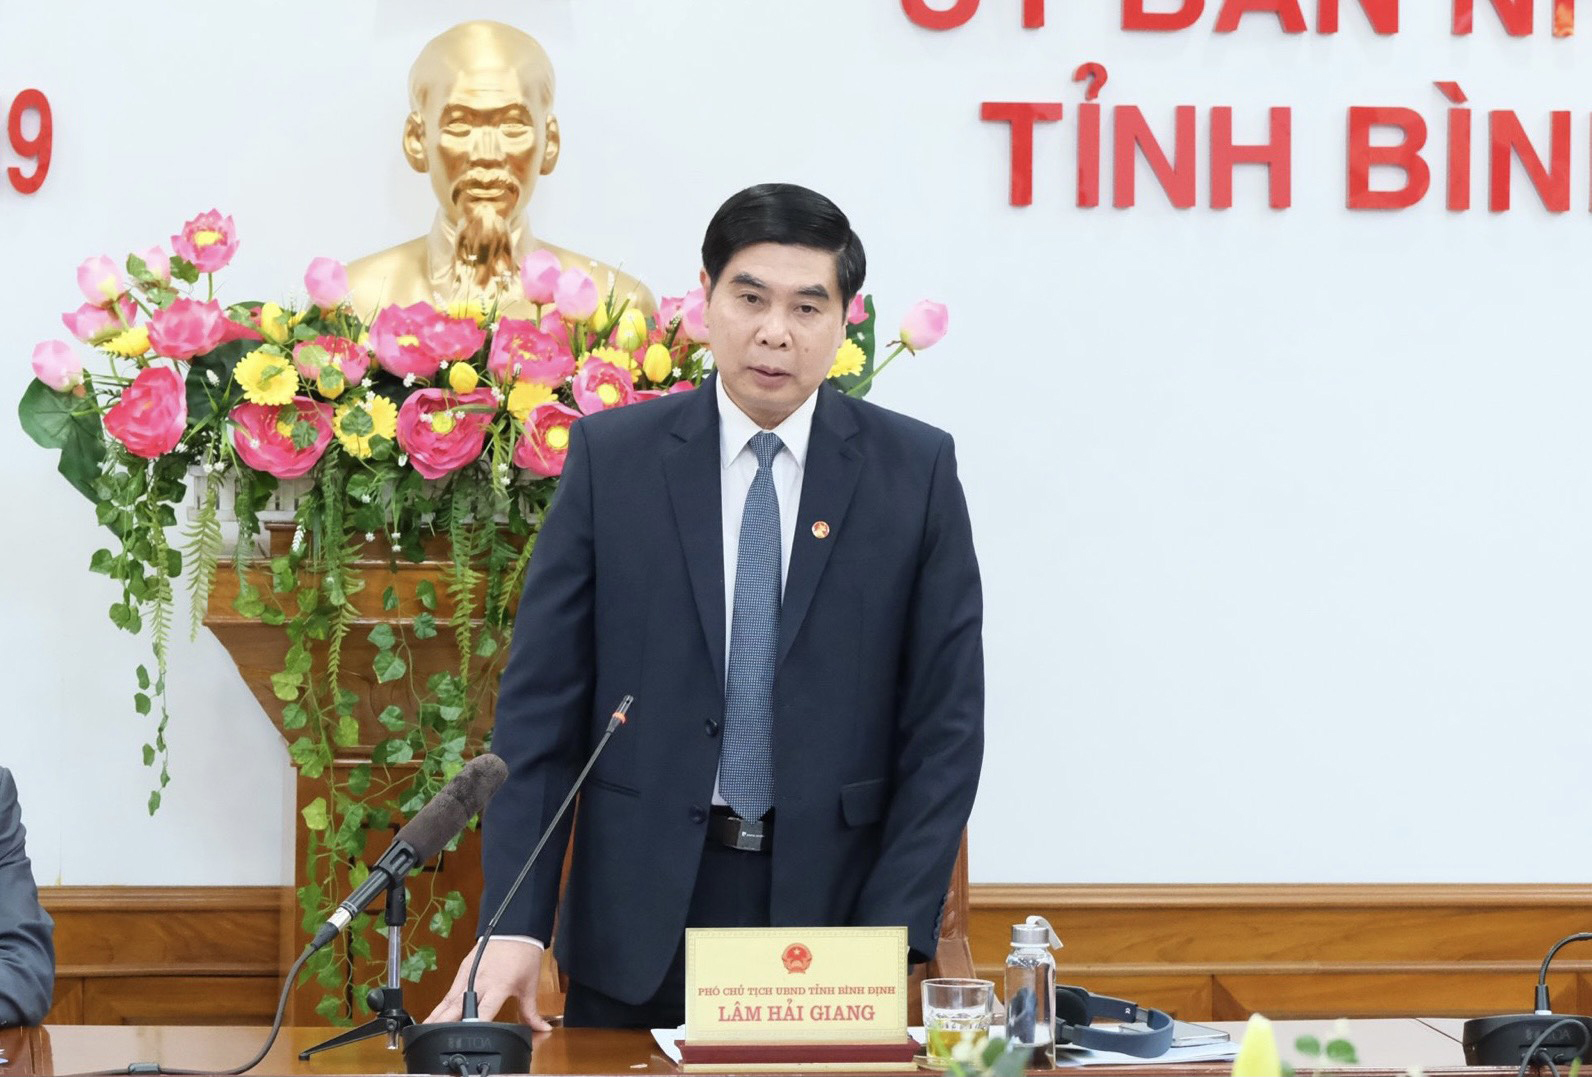 Đồng chí Lâm Hải Giang – Phó Chủ tịch UBND tỉnh Bình Định phát biểu tại Hội thảo.